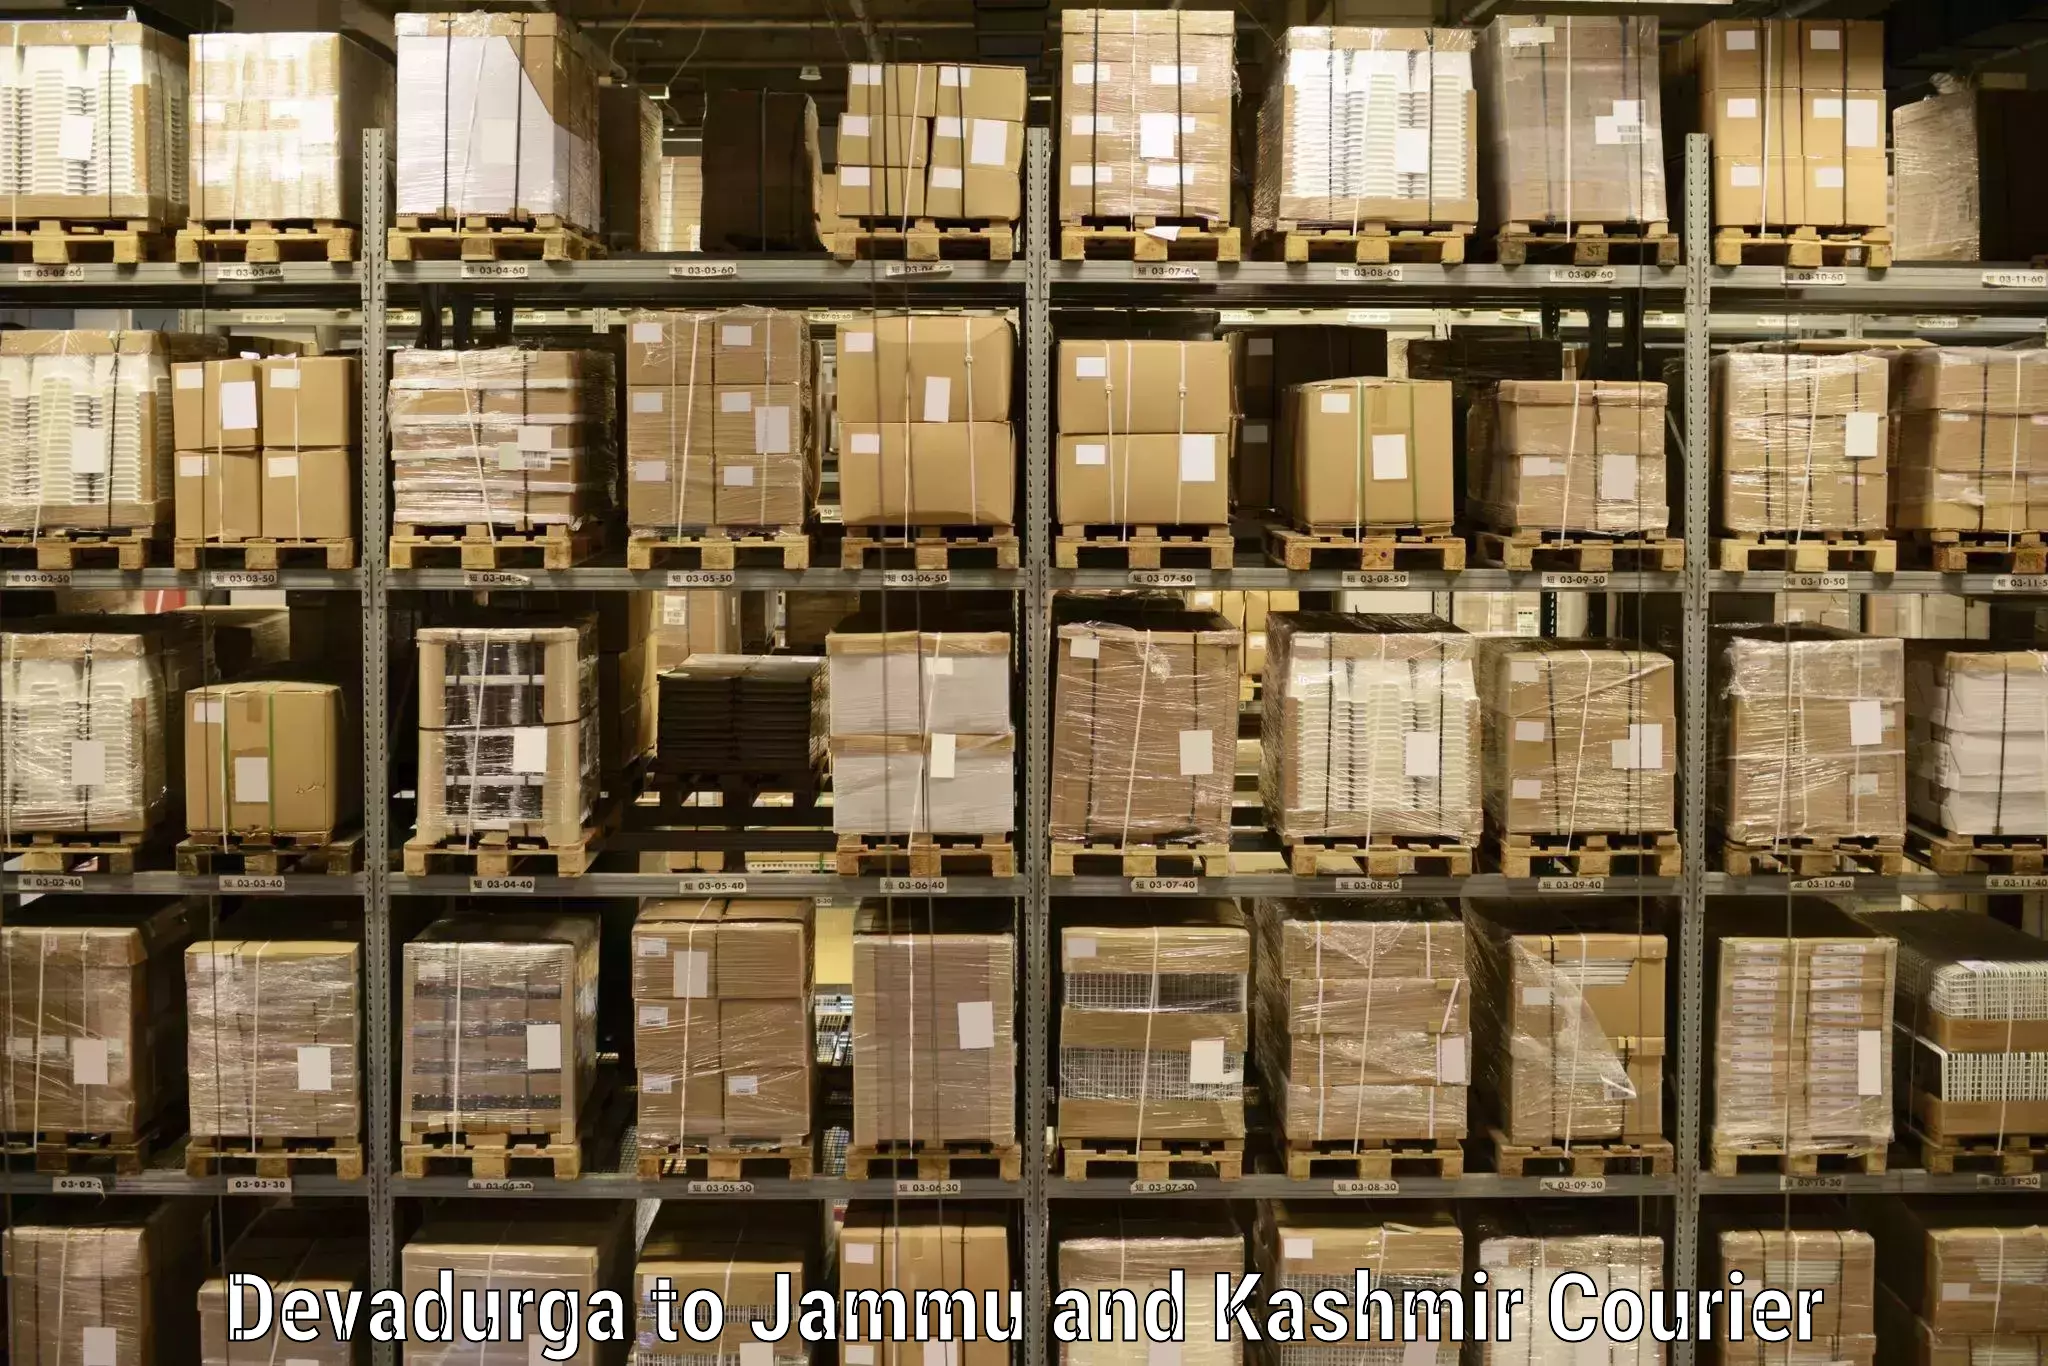 Urgent courier needs Devadurga to Jammu